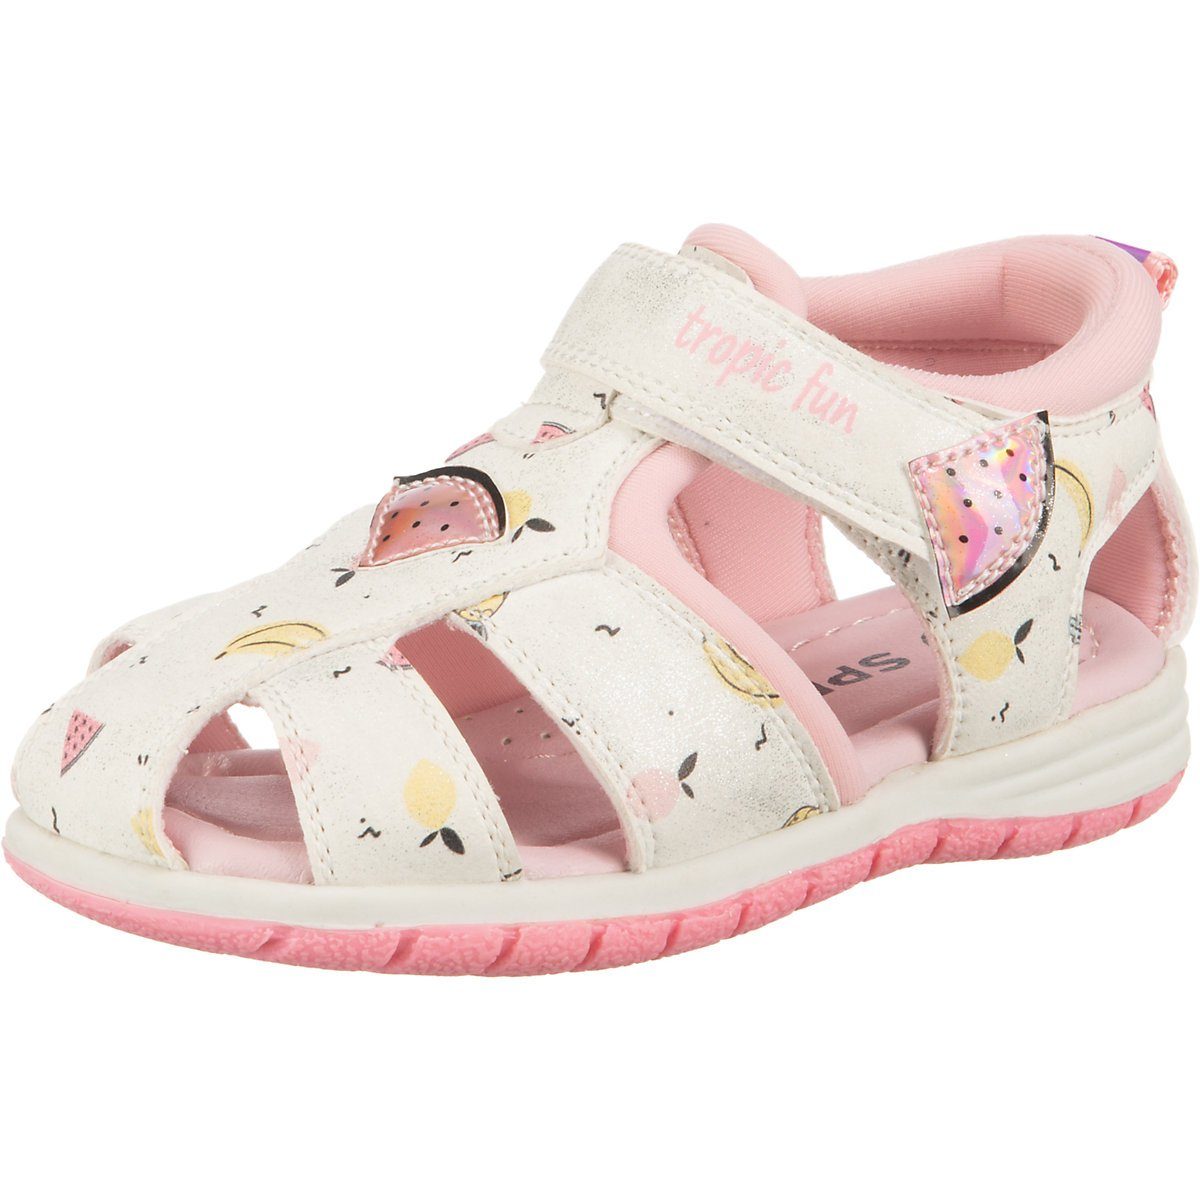 Schuhe Babyschuhe Mädchen SPROX Baby Sandalen für Mädchen Sandale